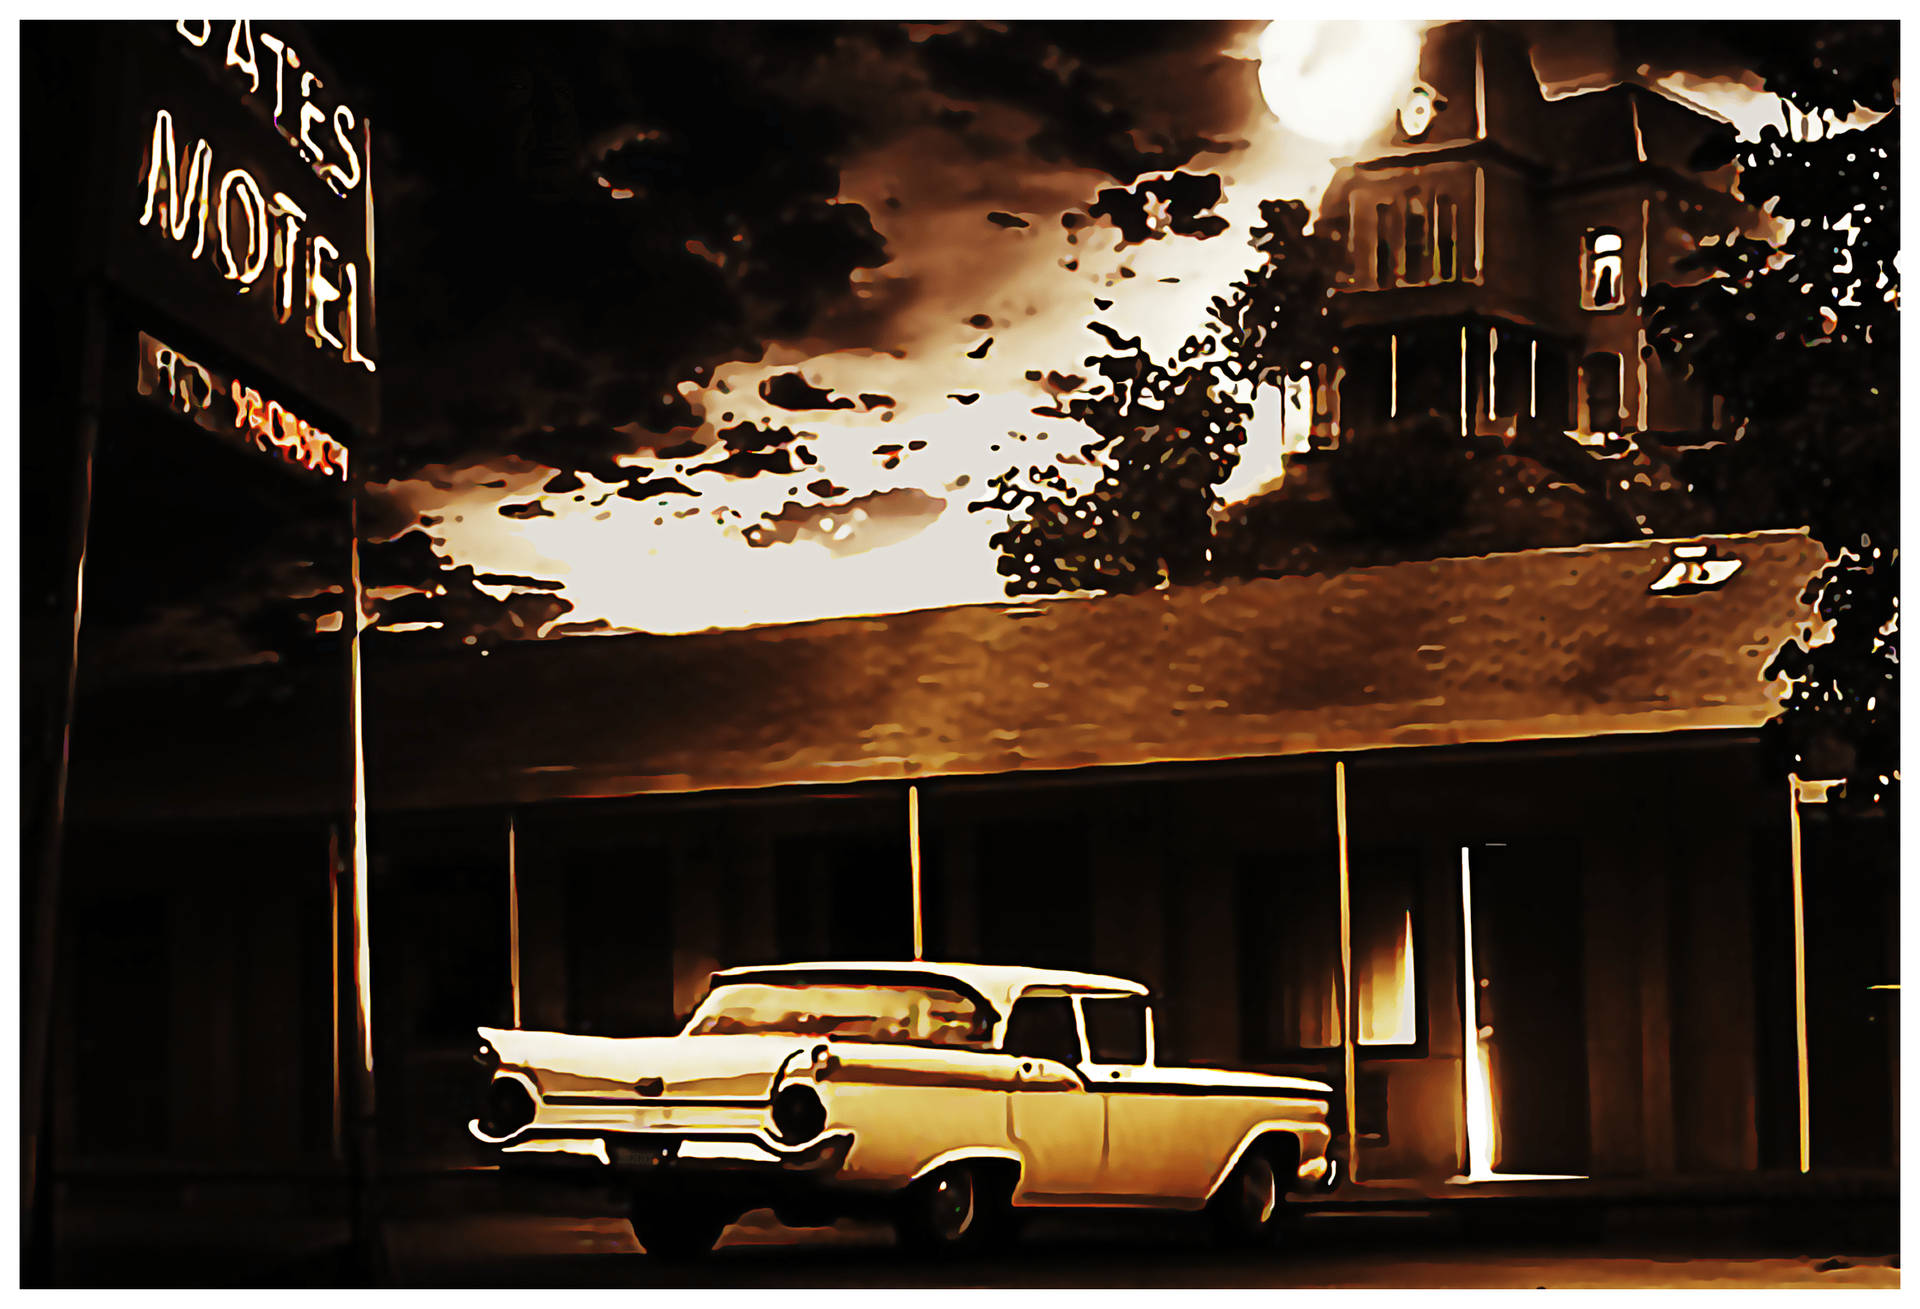 Fordfairlane På Bates Motel. Wallpaper